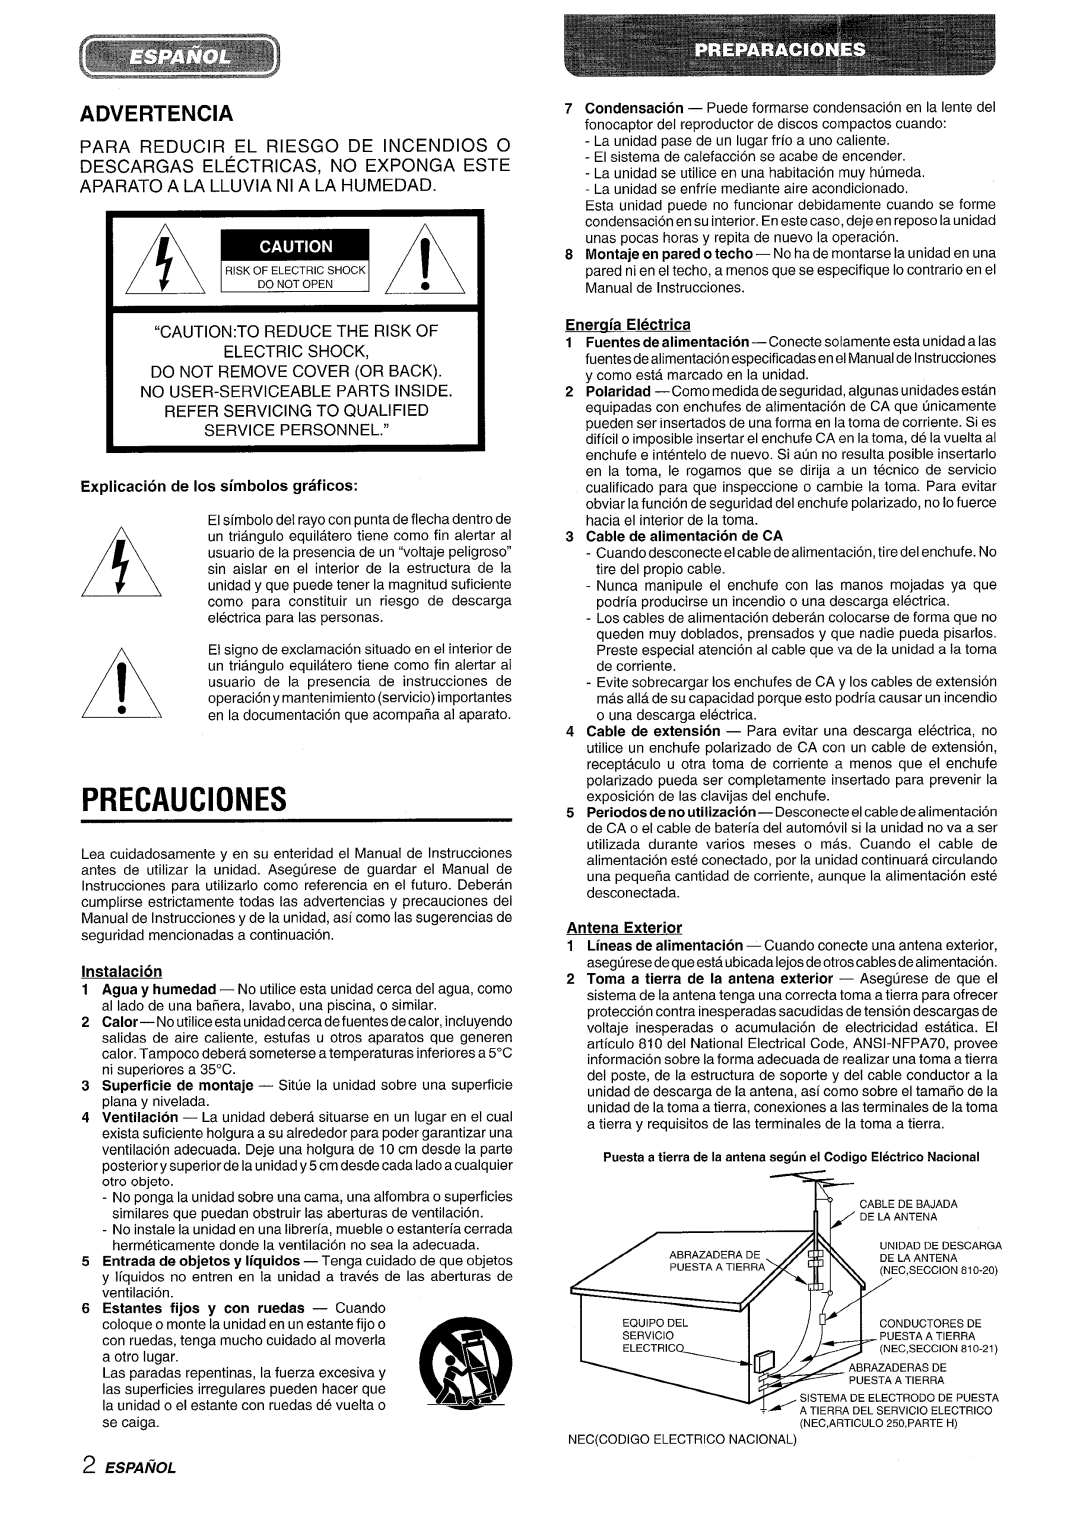 Aiwa XR-M70 A ~, Precauciones, Advertencia, Eneraia- Electrica, Cable de alimentacion de CA, Instalacion, Antena Exterior 